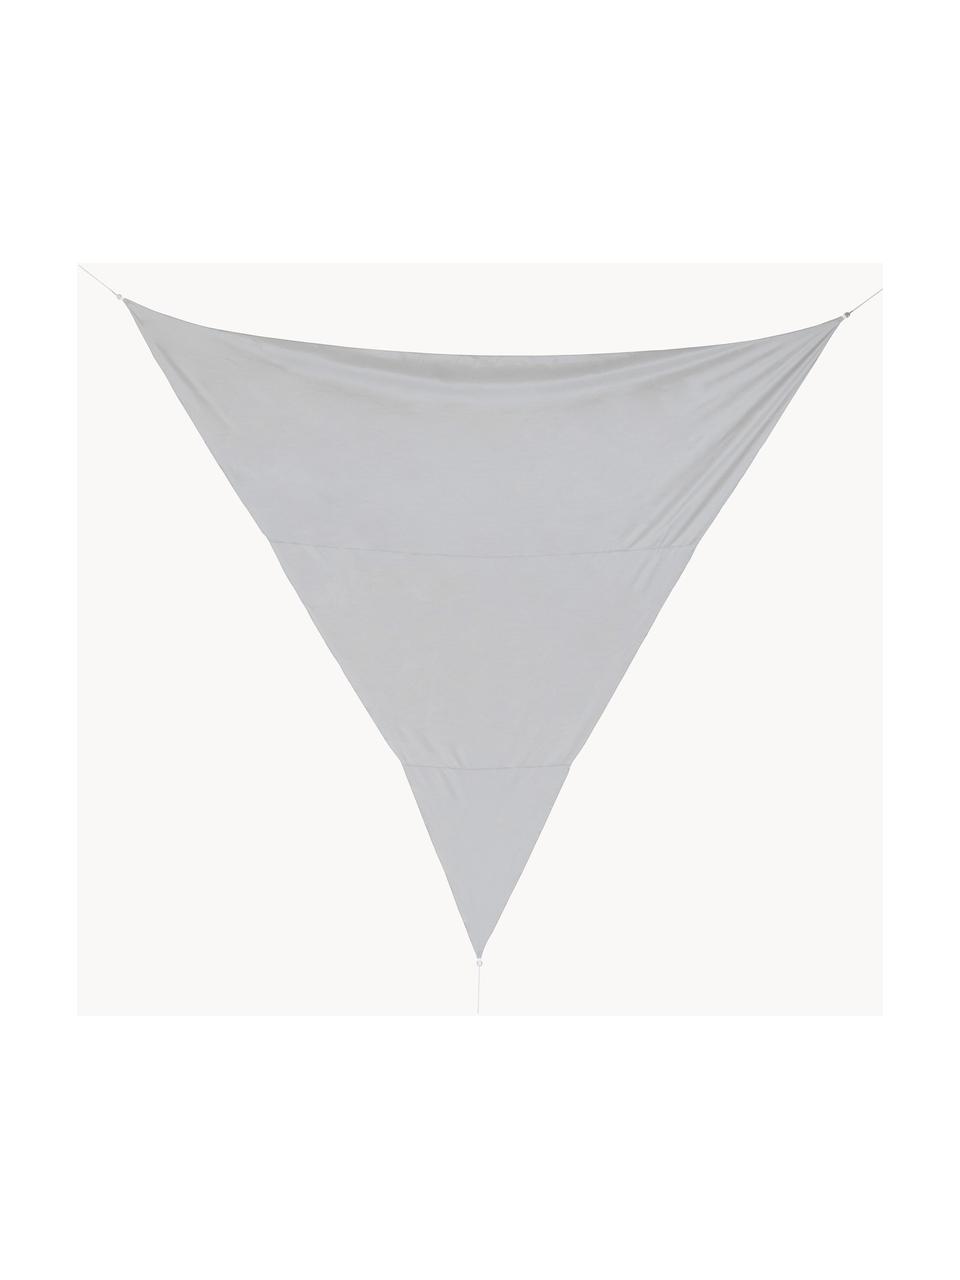 Zonnescherm Triangle, Grijs, B 360 x L 360 cm